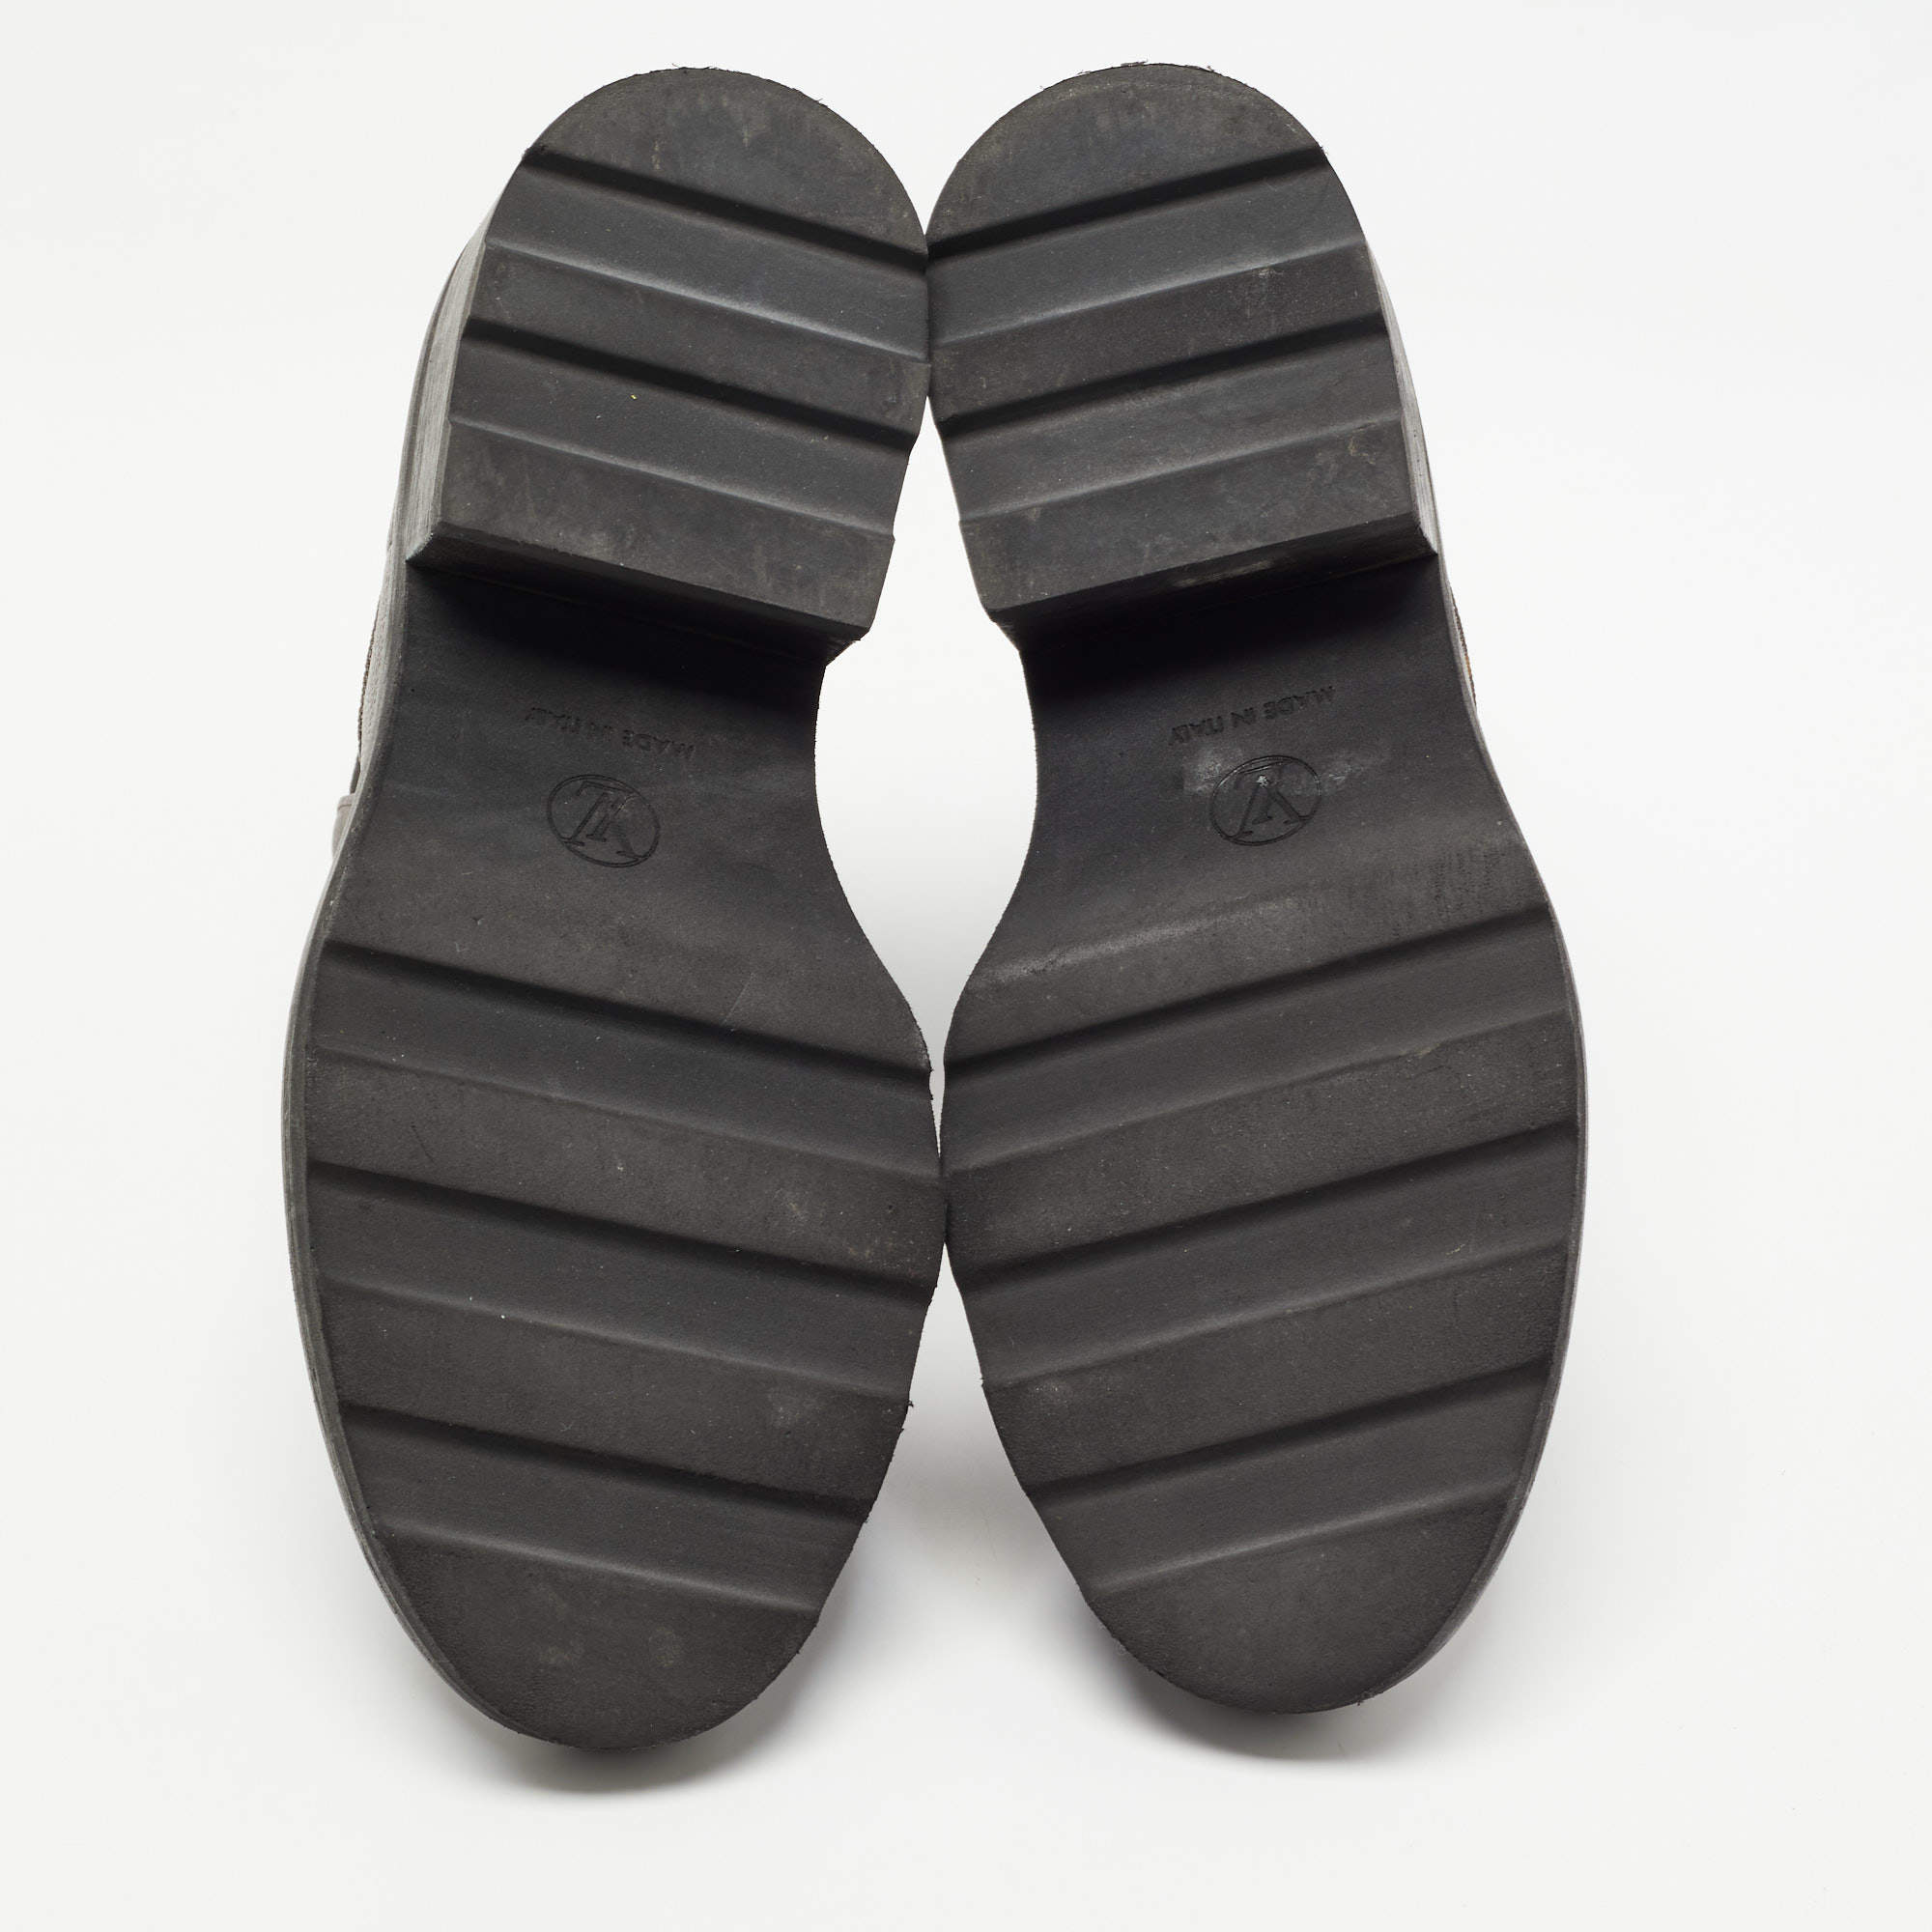 Louis Vuitton Parisienne Ankle Boot COGNAC. Size 41.0